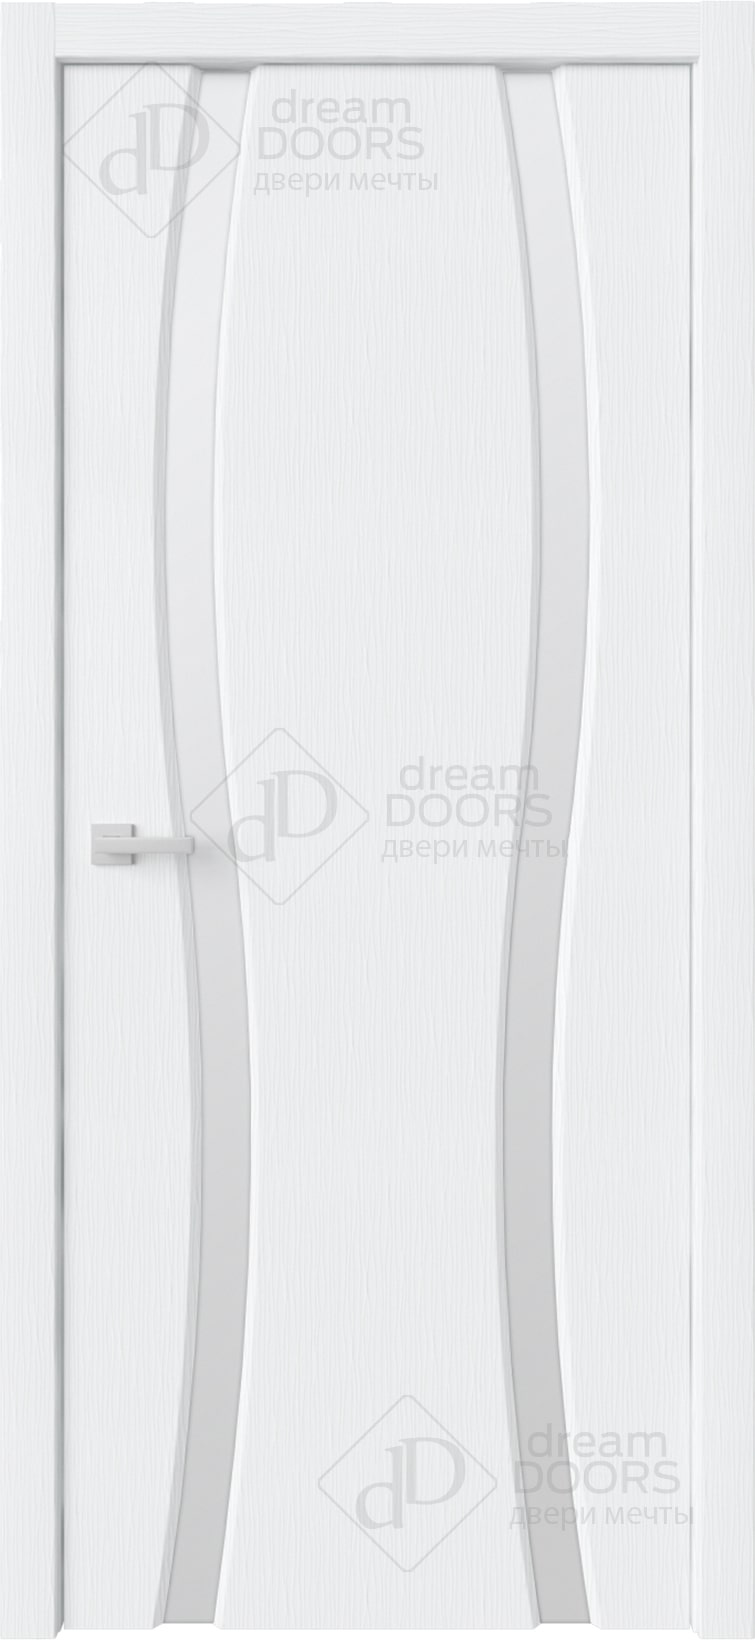 Dream Doors Межкомнатная дверь Сириус 2 узкое ДО, арт. 20082 - фото №1